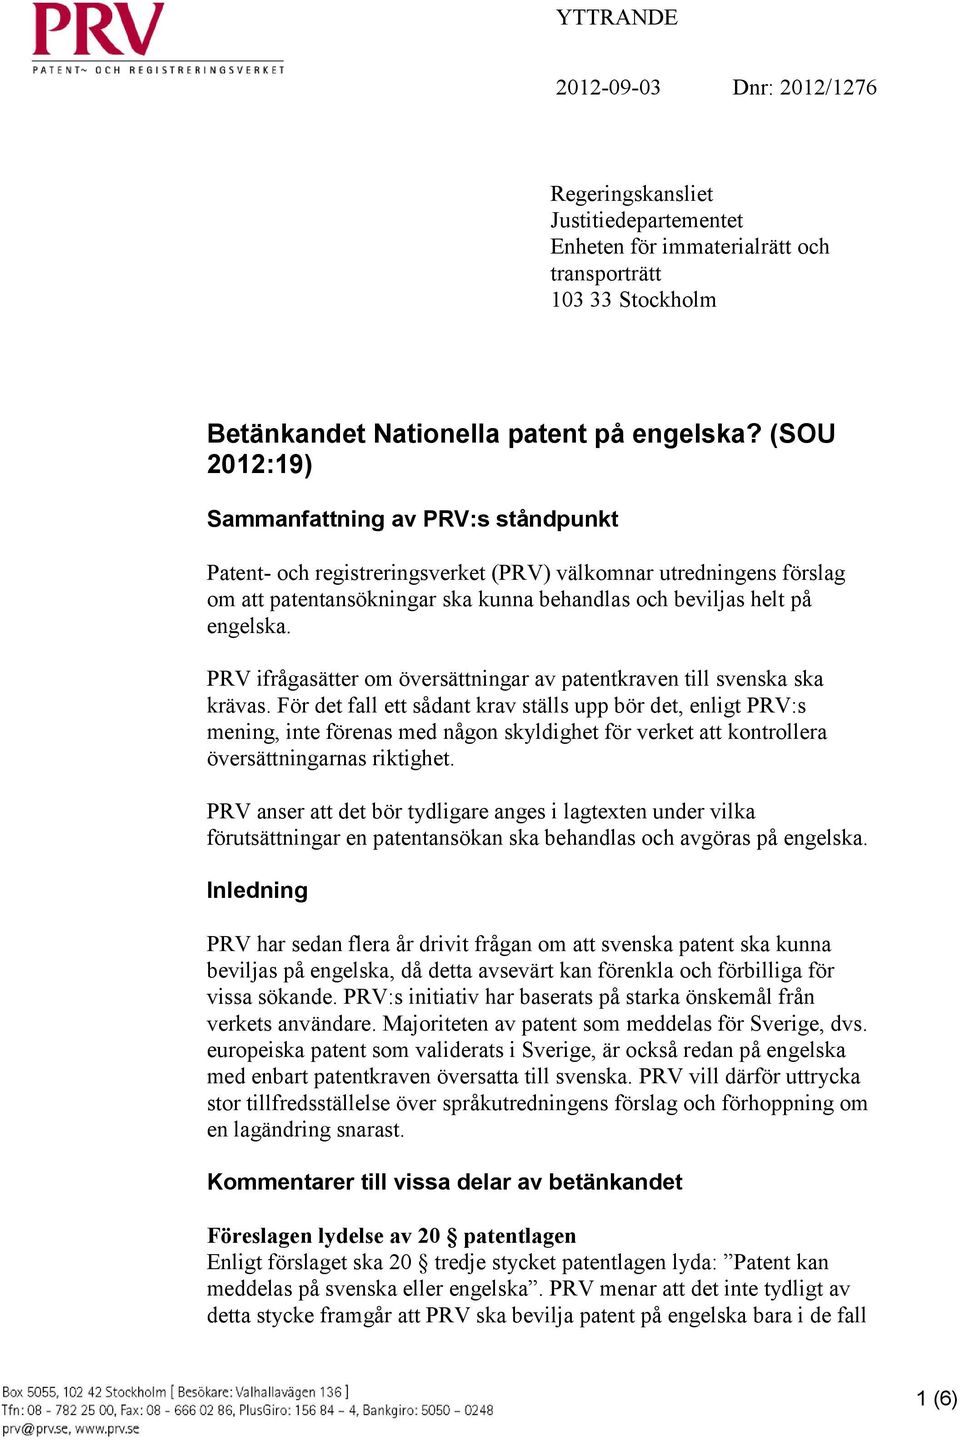 PRV ifrågasätter om översättningar av patentkraven till svenska ska krävas.